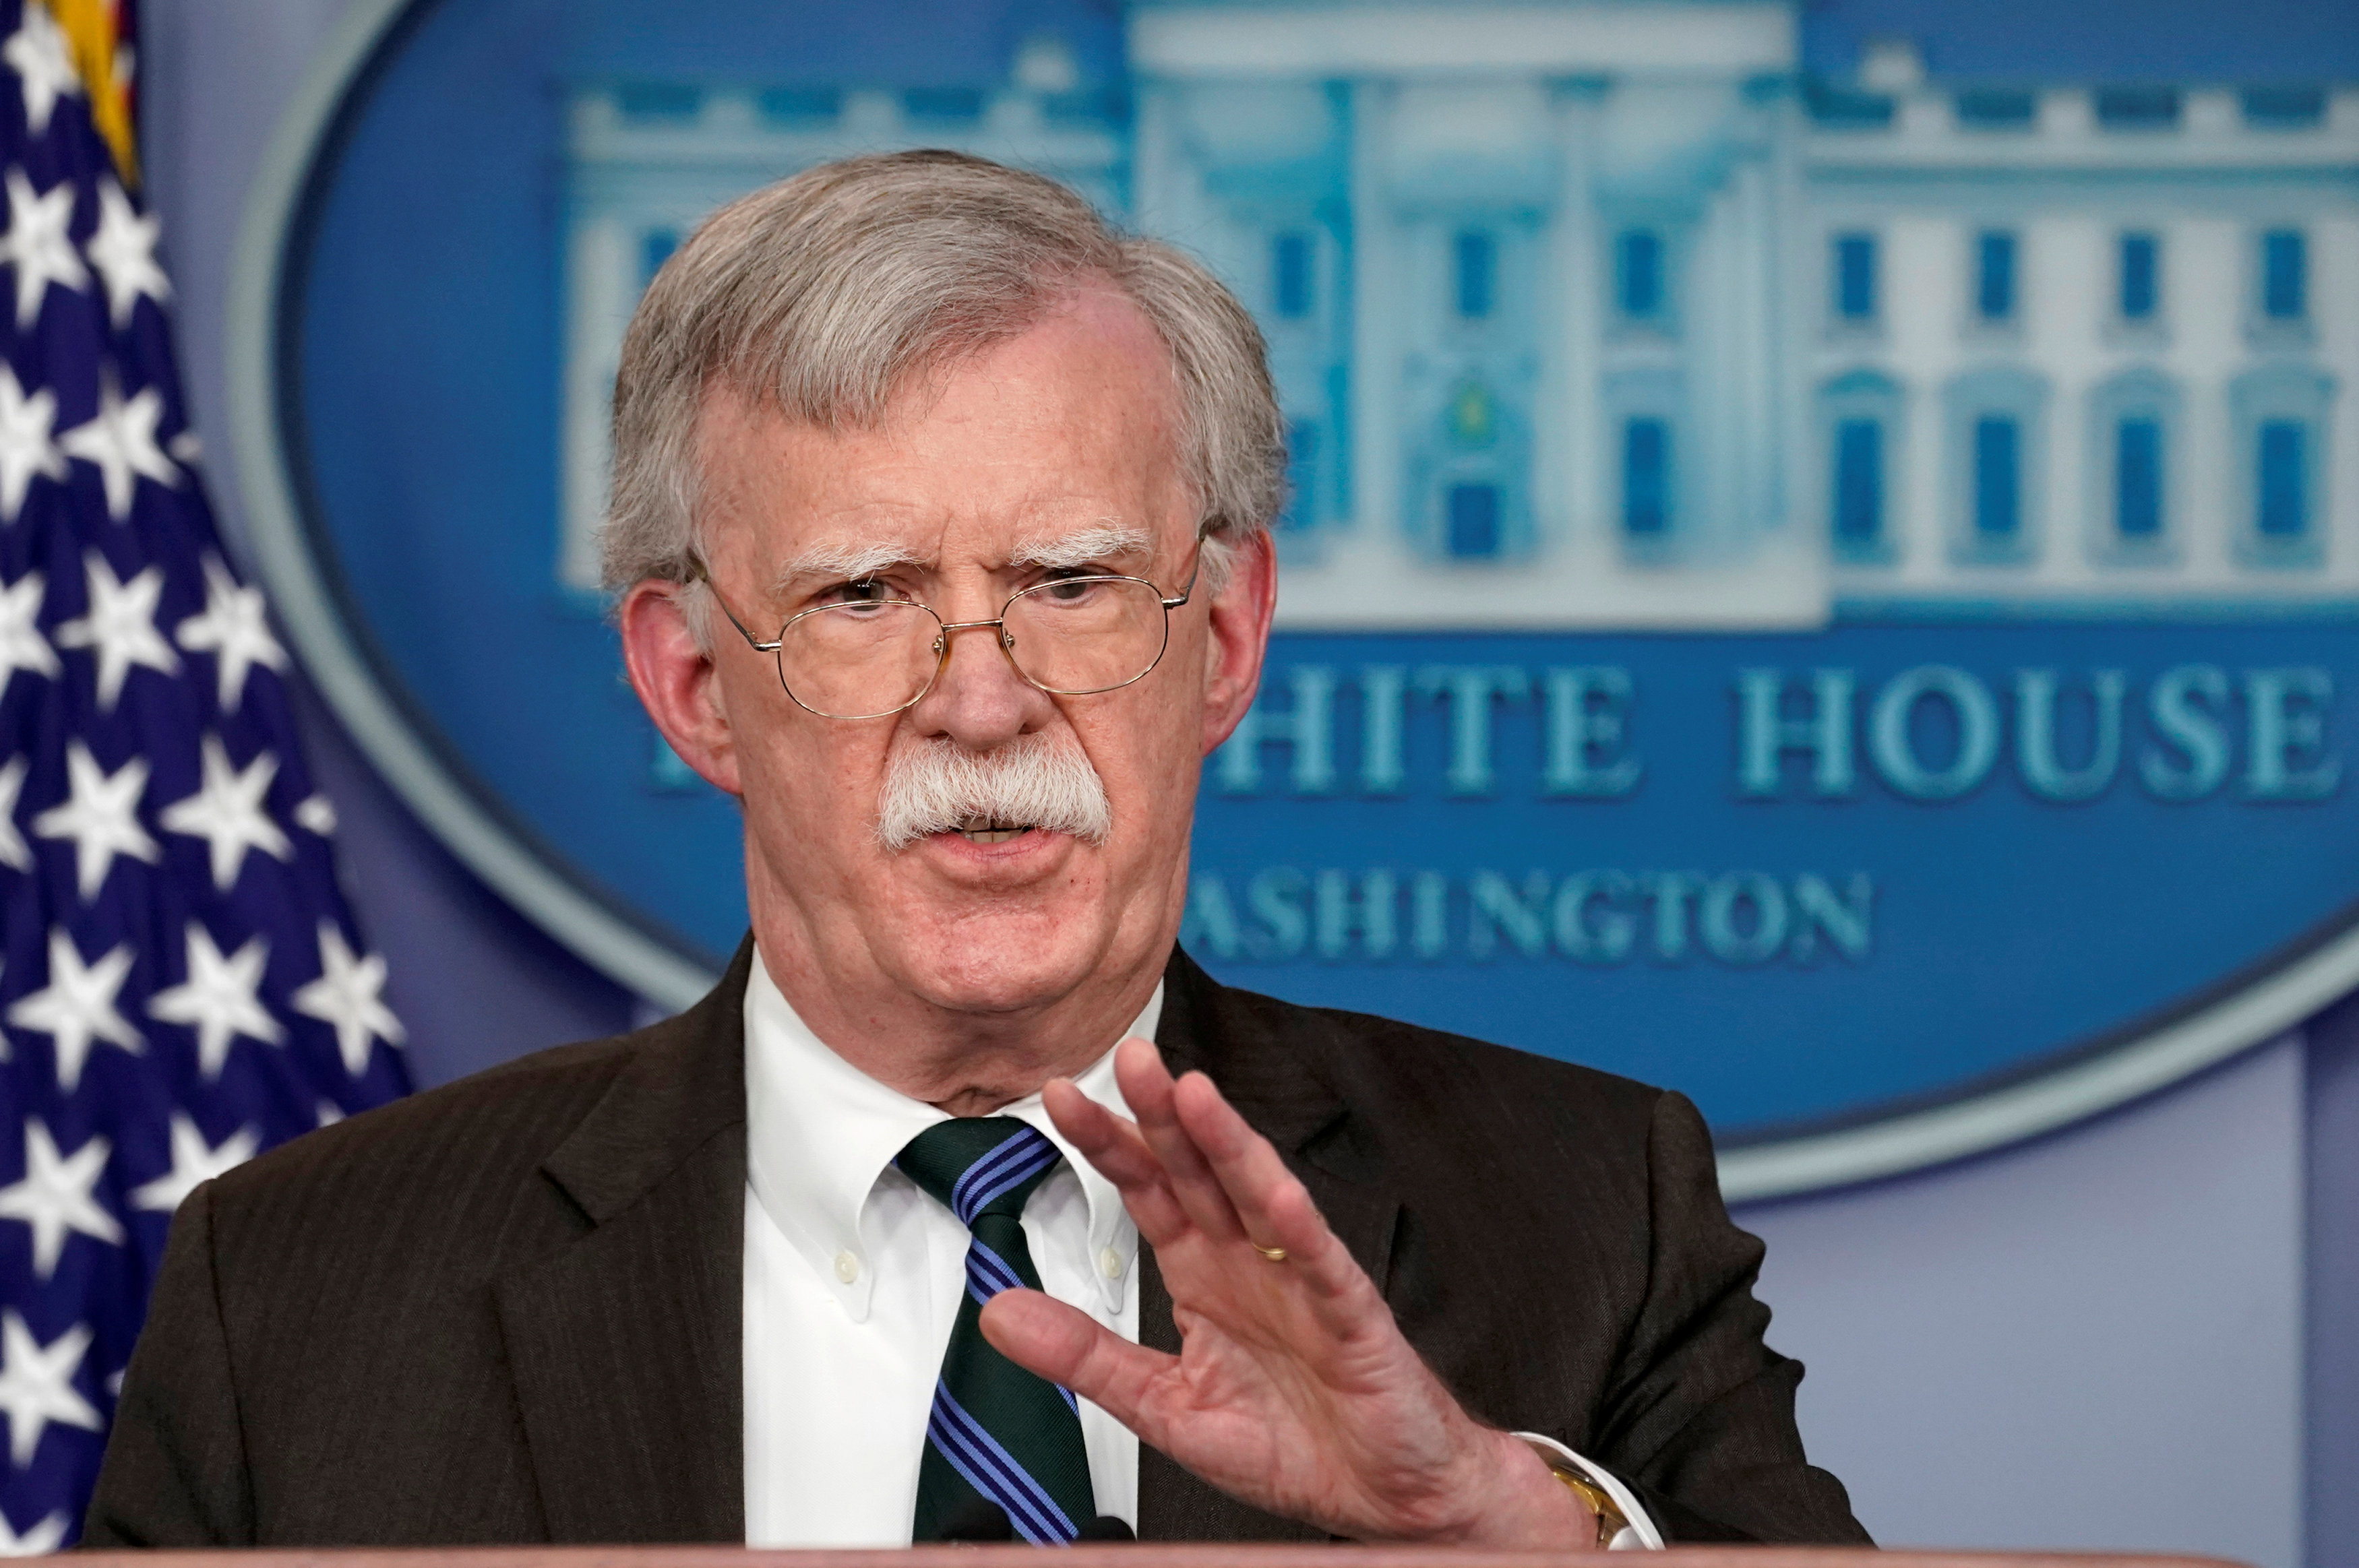 Bolton aseveró que derrocar el Gobierno de Venezuela representa una 